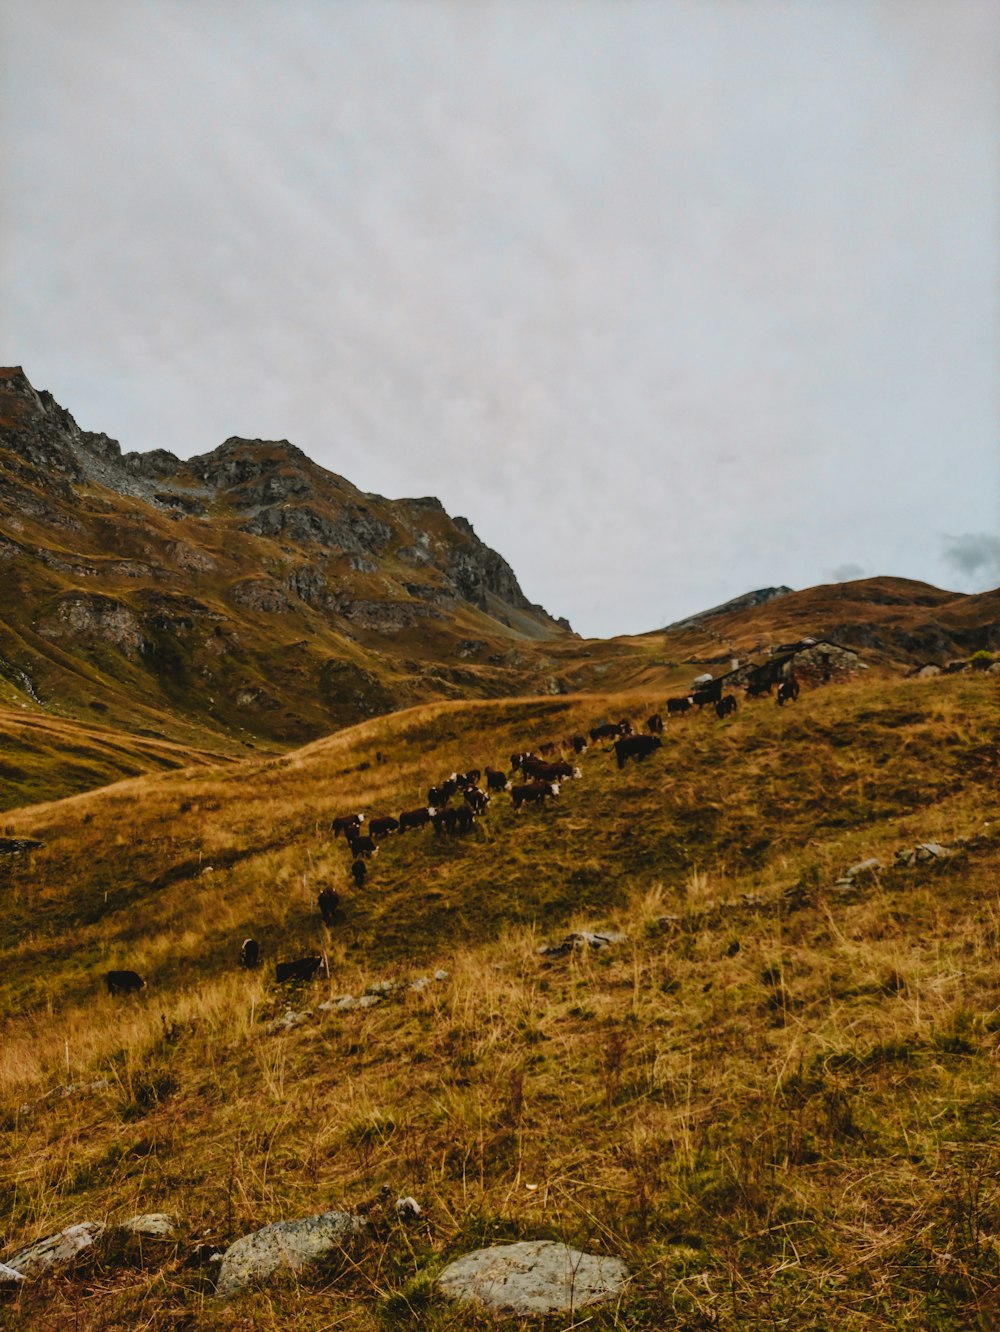 Un grupo de vacas pastando en una colina